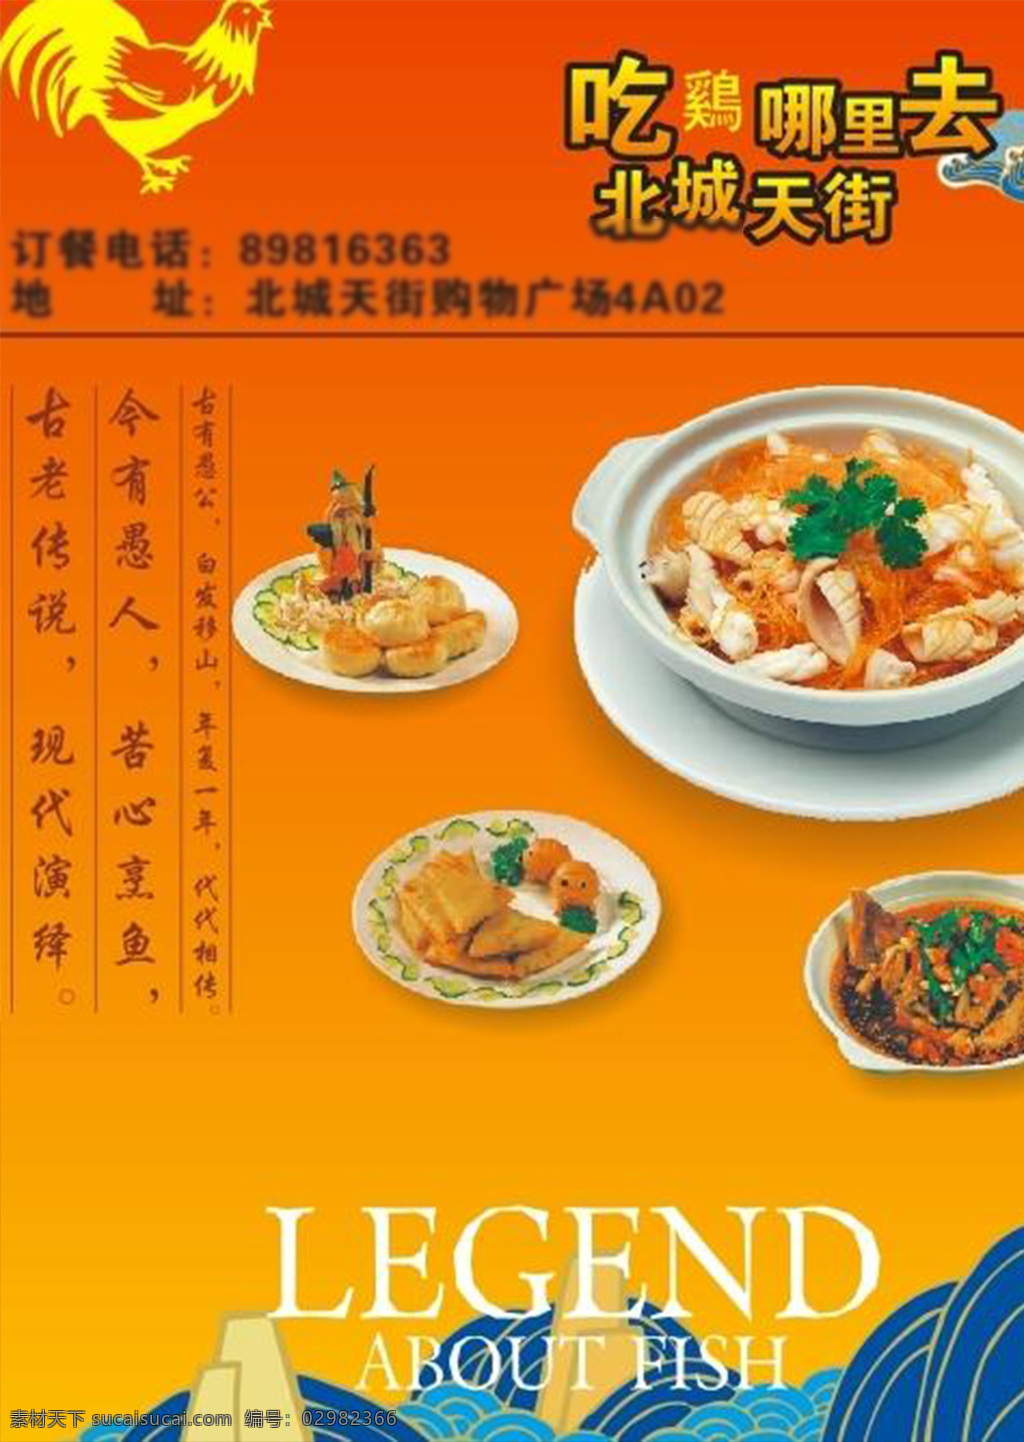 鸡 公 煲 火锅 宣传单 鸡公堡 四川火锅 宣传单海报 模板 橙色